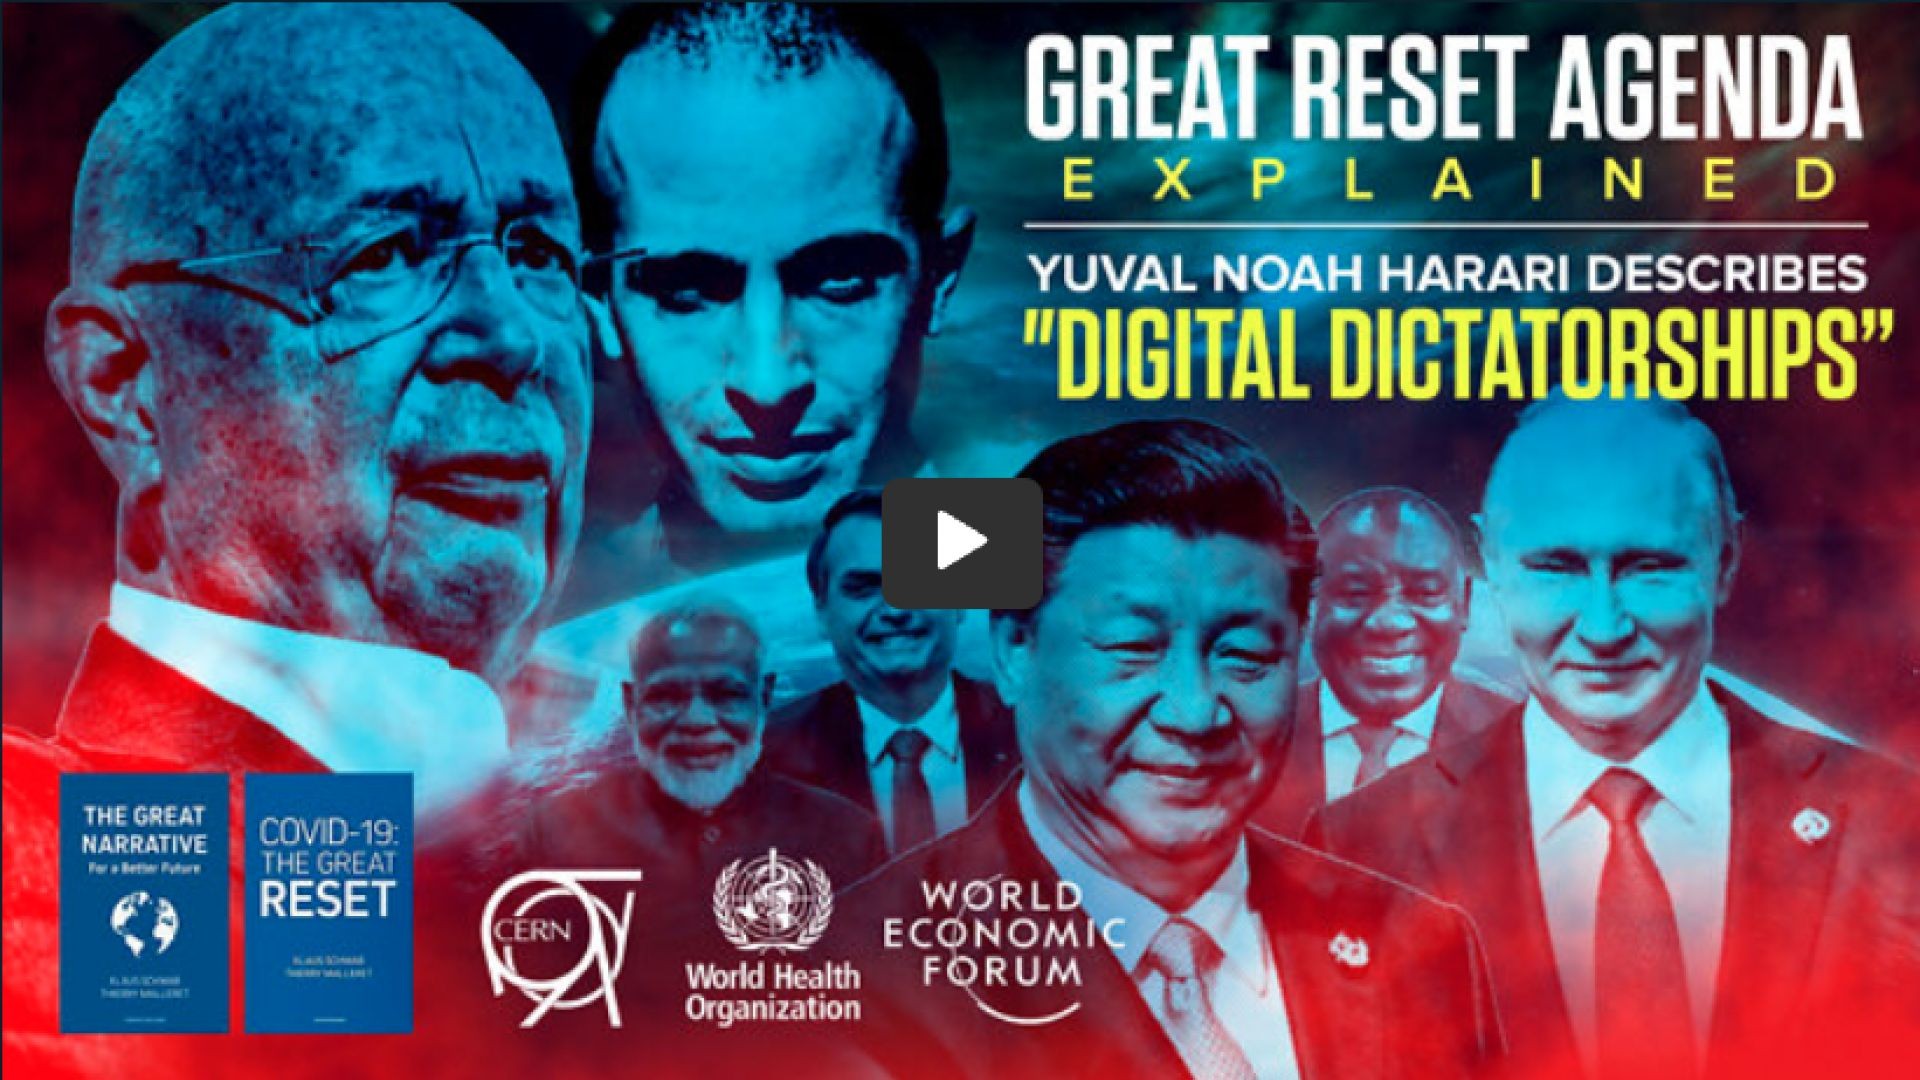 The Great Reset Agenda Explained | Yuval Noah Harari Describes "Digital Dictatorships, "El